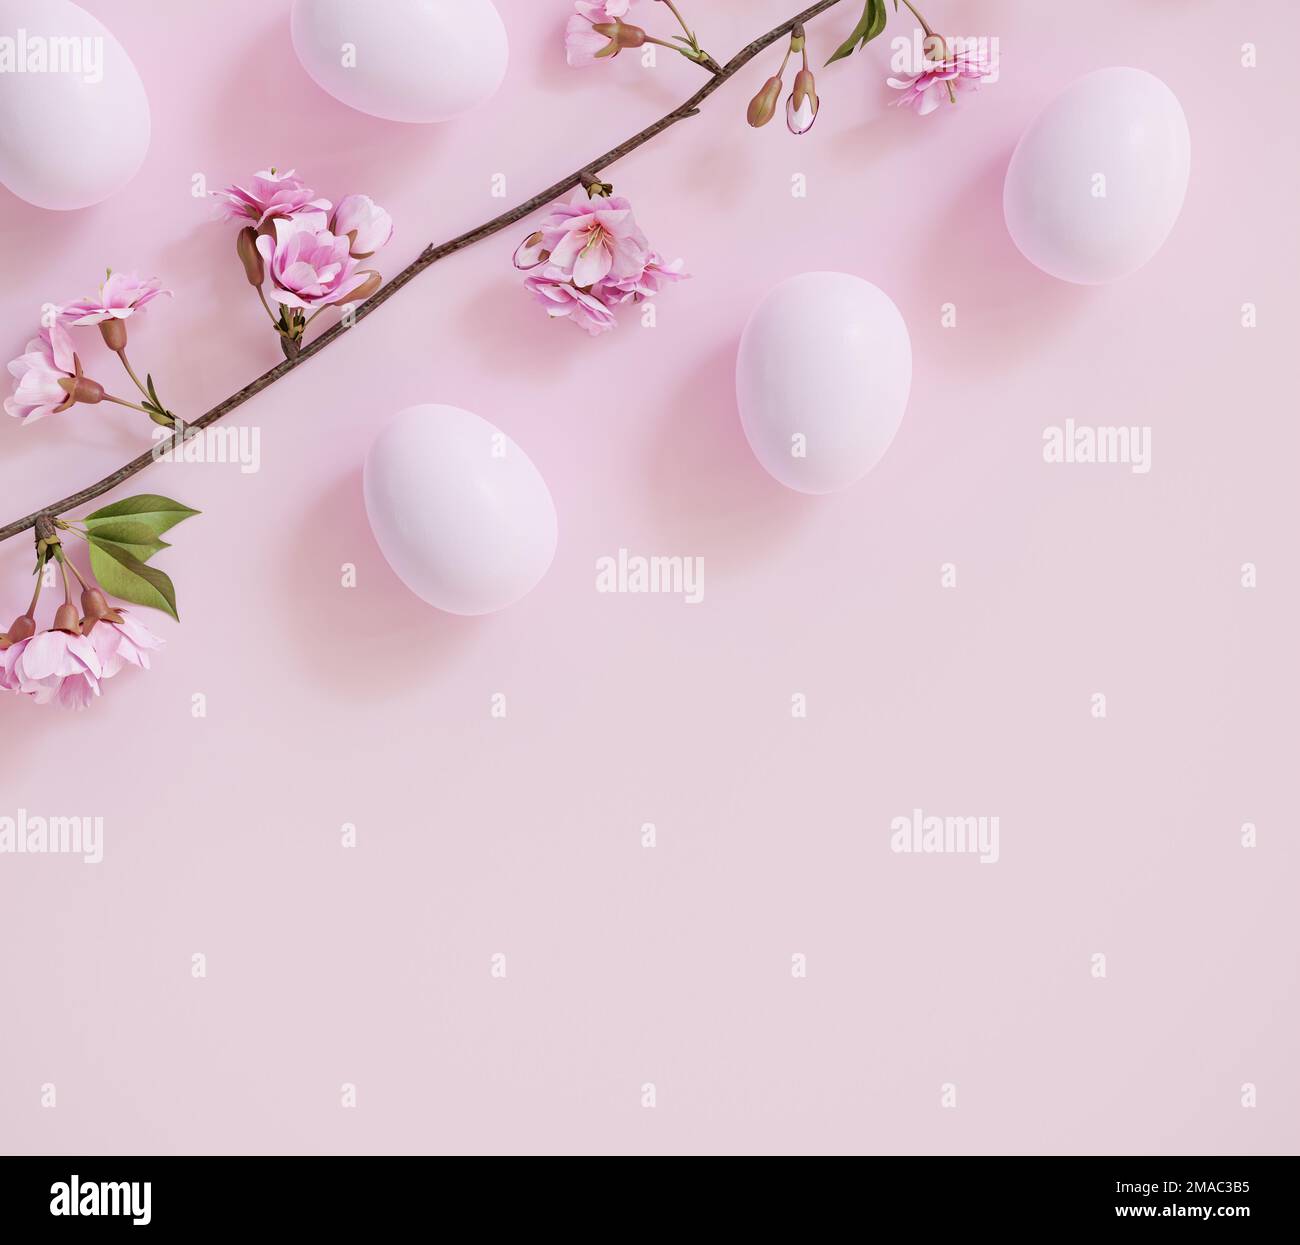 Fond de Pâques : oeufs de Pâques sur fond rose pastel avec une branche d'un cerisier fleuri Banque D'Images